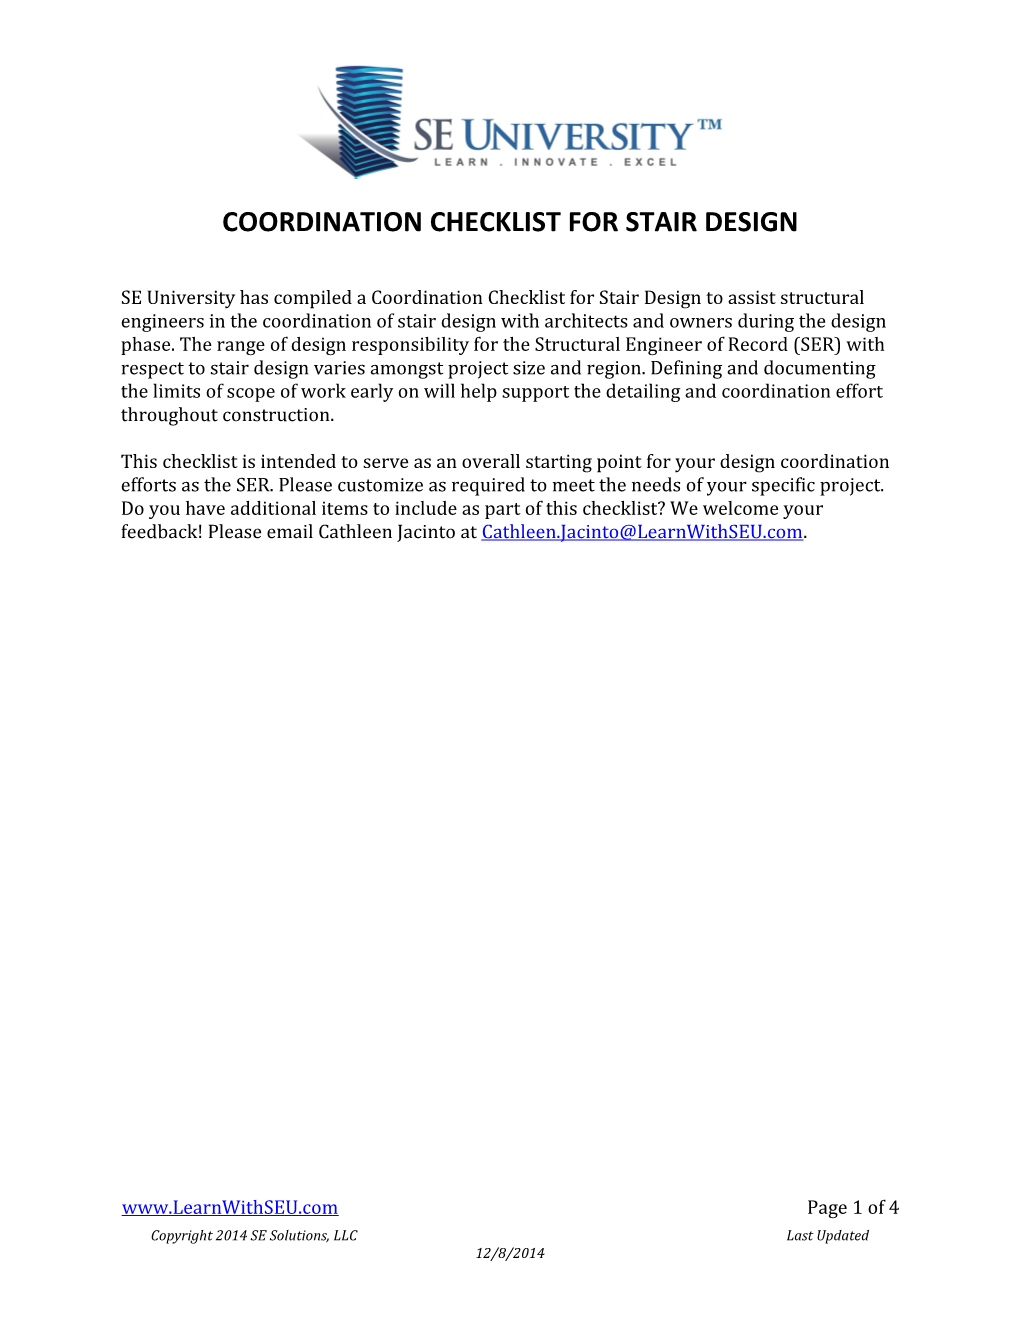 Coordination Checklist for Stair Design